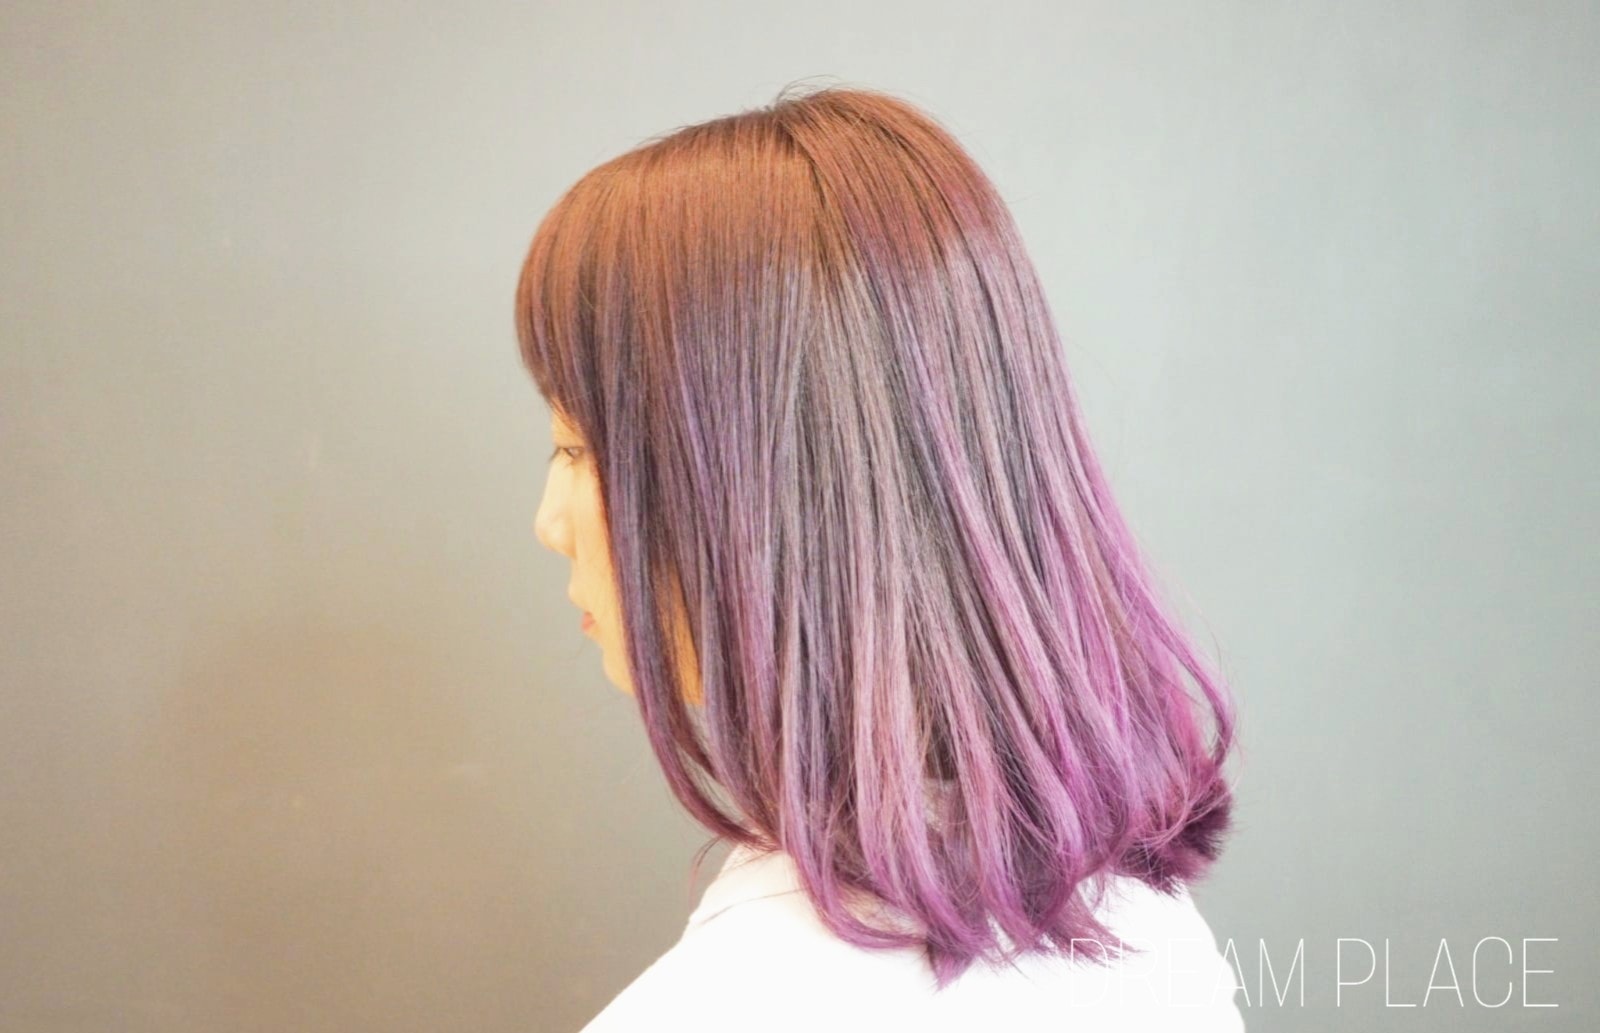 髮型作品參考:深淺漸變紫色